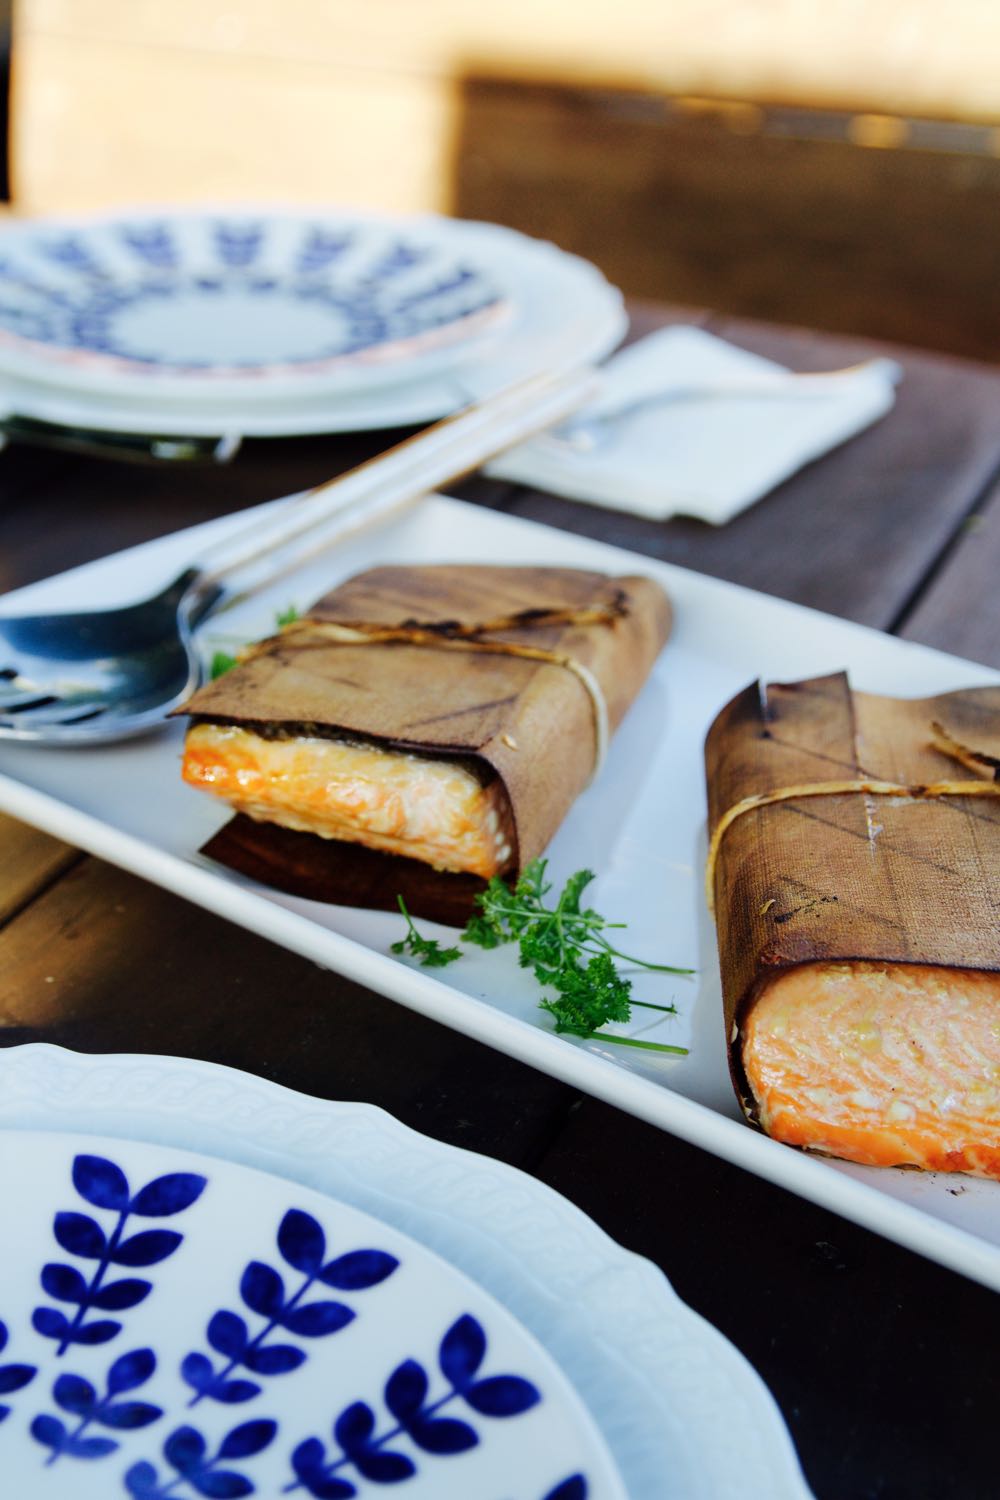 Cedar plank salmon with asian marinade